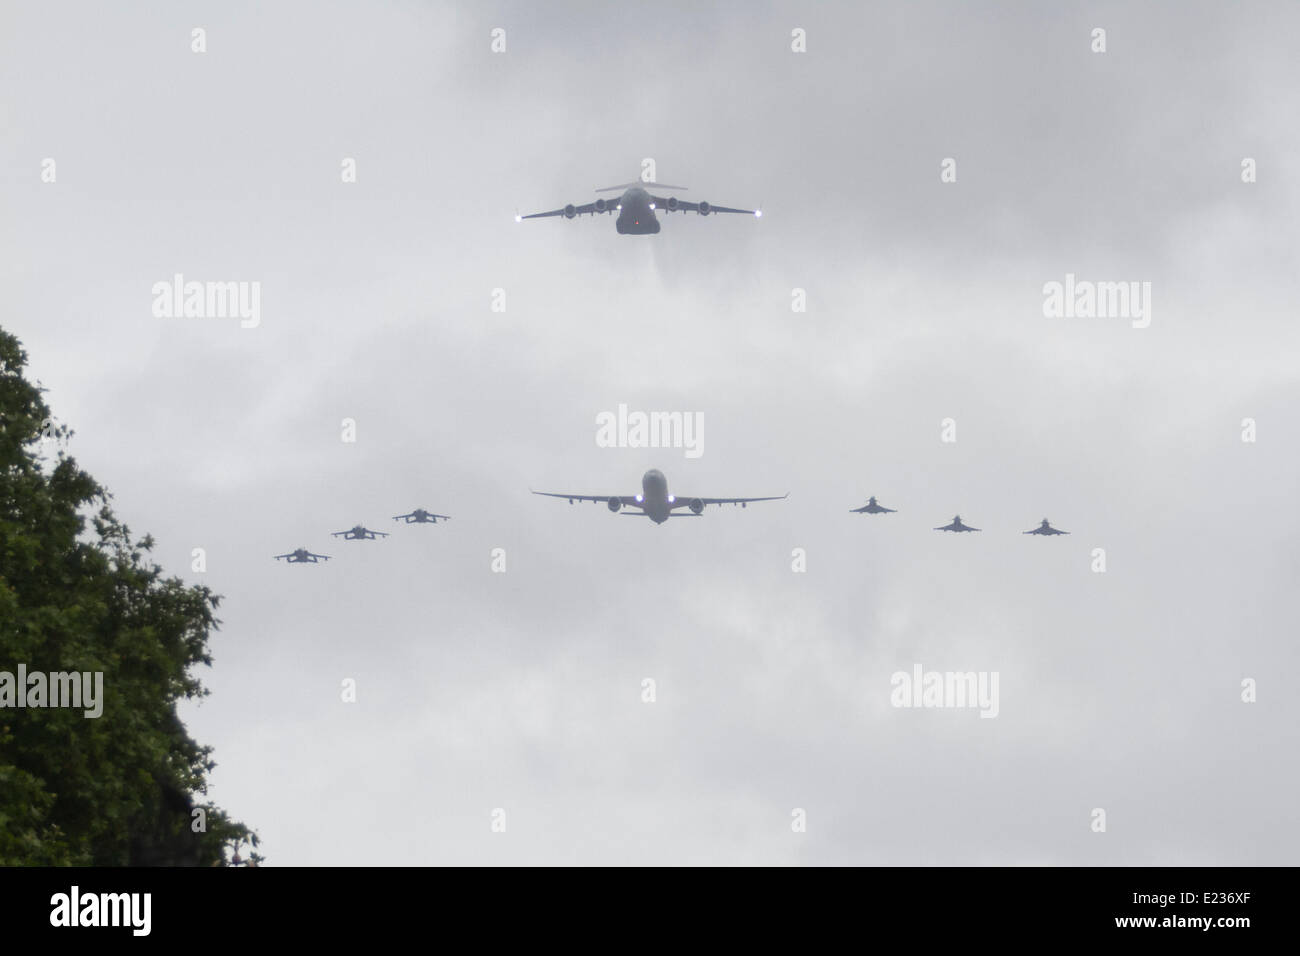 Londres, Reino Unido. El 14 de junio de 2014. Un militar flypast se efectúa en el Palacio de Buckingham honrando el cumpleaños de la reina: amer ghazzal crédito/Alamy Live News Foto de stock